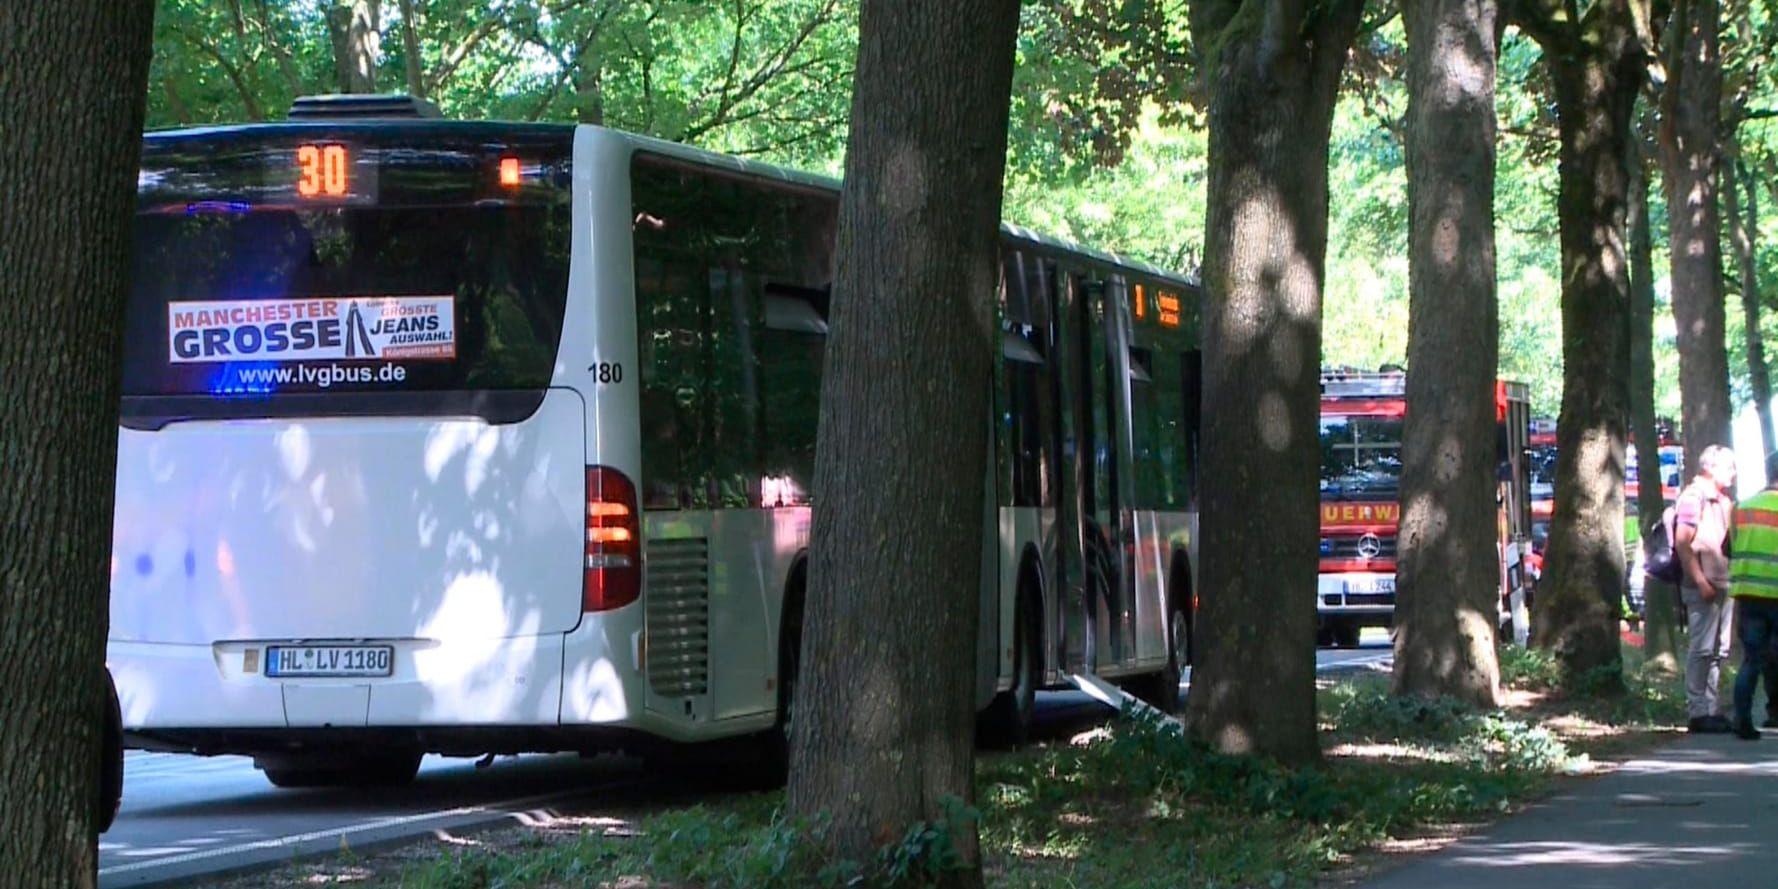 Bussen där knivöverfallet inträffade står parkerad på en gata i Lübeck.